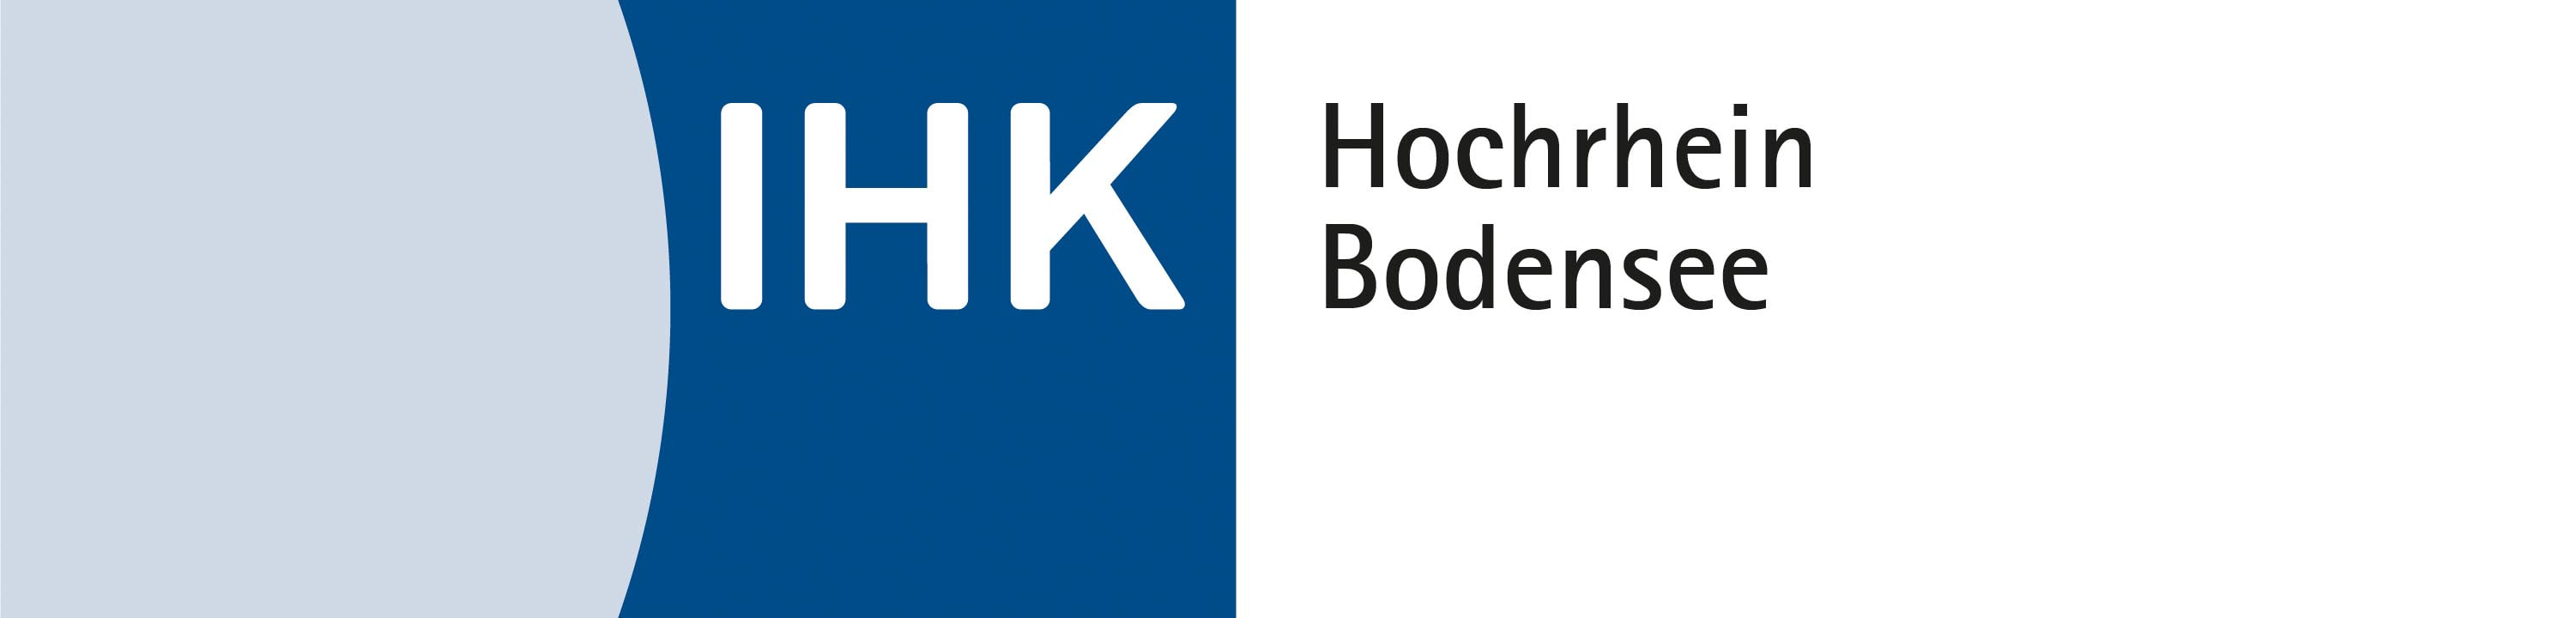 Industrie- und Handelskammer Hochrhein-Bodensee